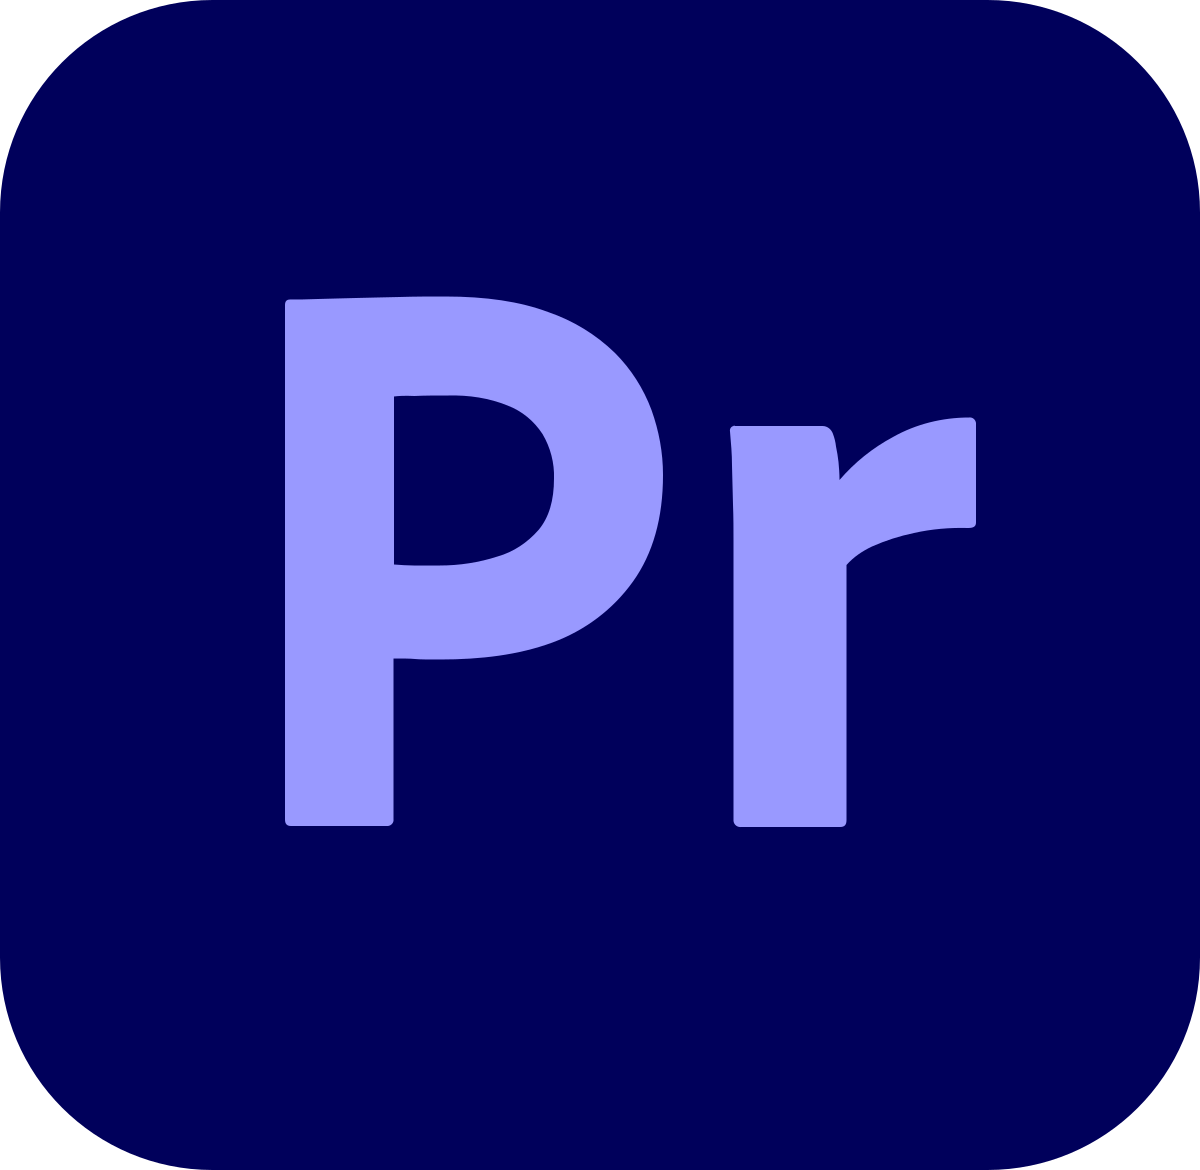 Adobe Premiere Pro - Wikipedia, la enciclopedia libre